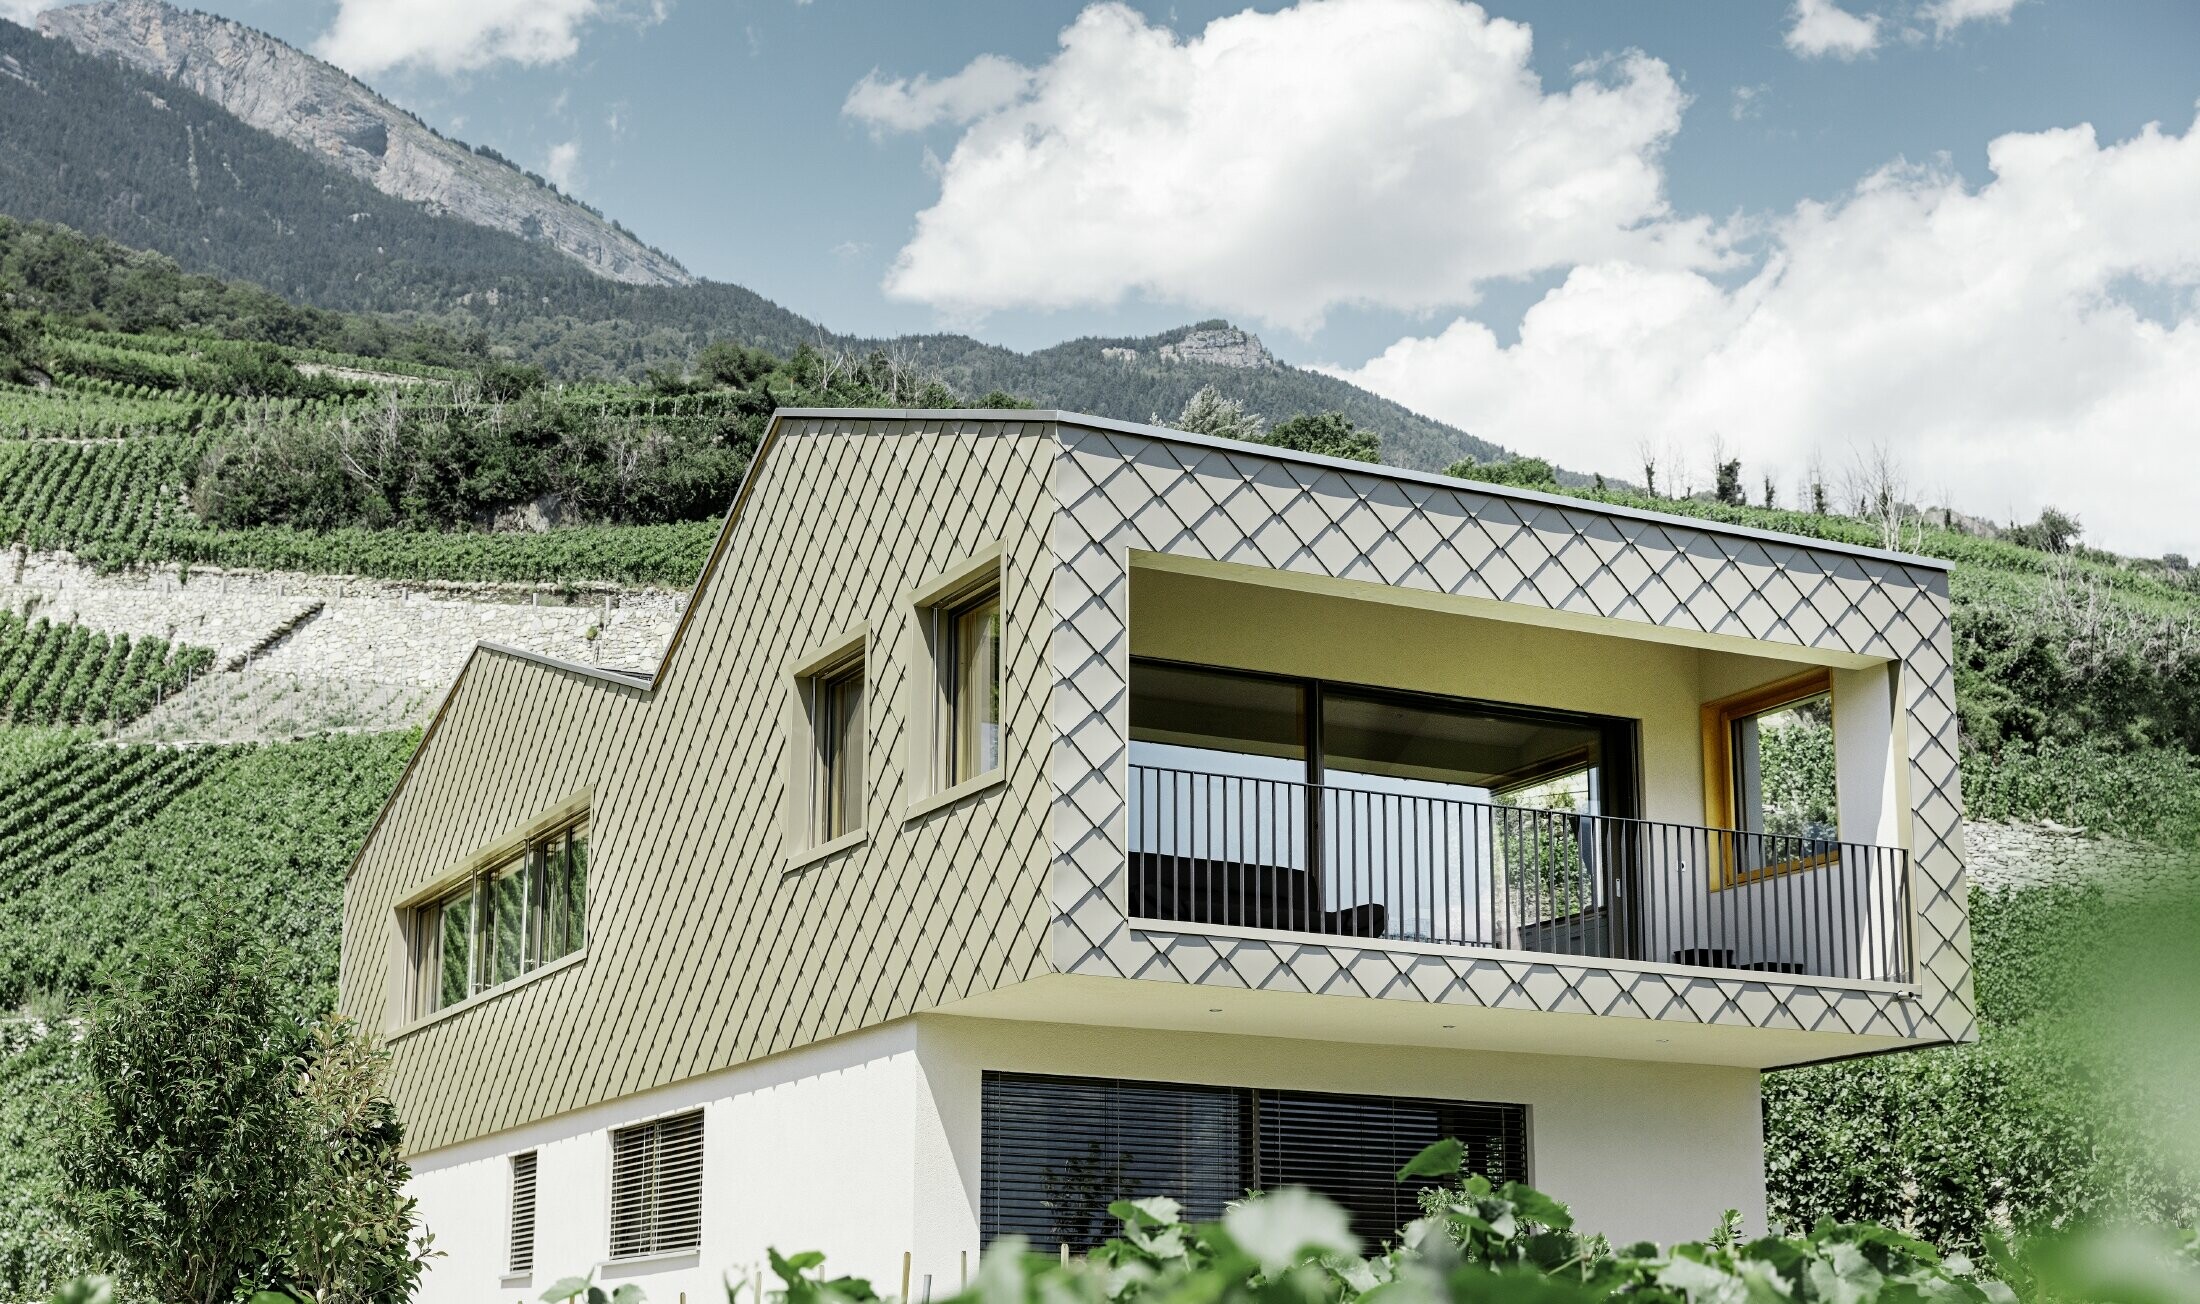 Sodobna enodružinska hiša sredi goric doline Rhône s štirimi različnimi strešnimi površinami in odprto galerijo s fasado iz rombov v bronasti barvi